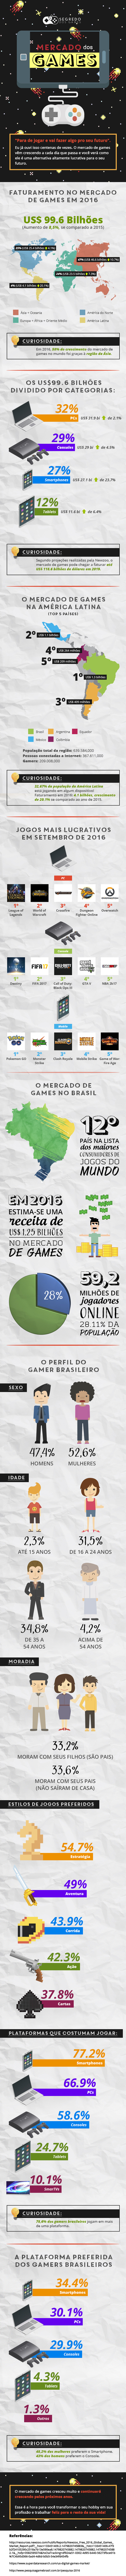 mercado de games no brasil 1